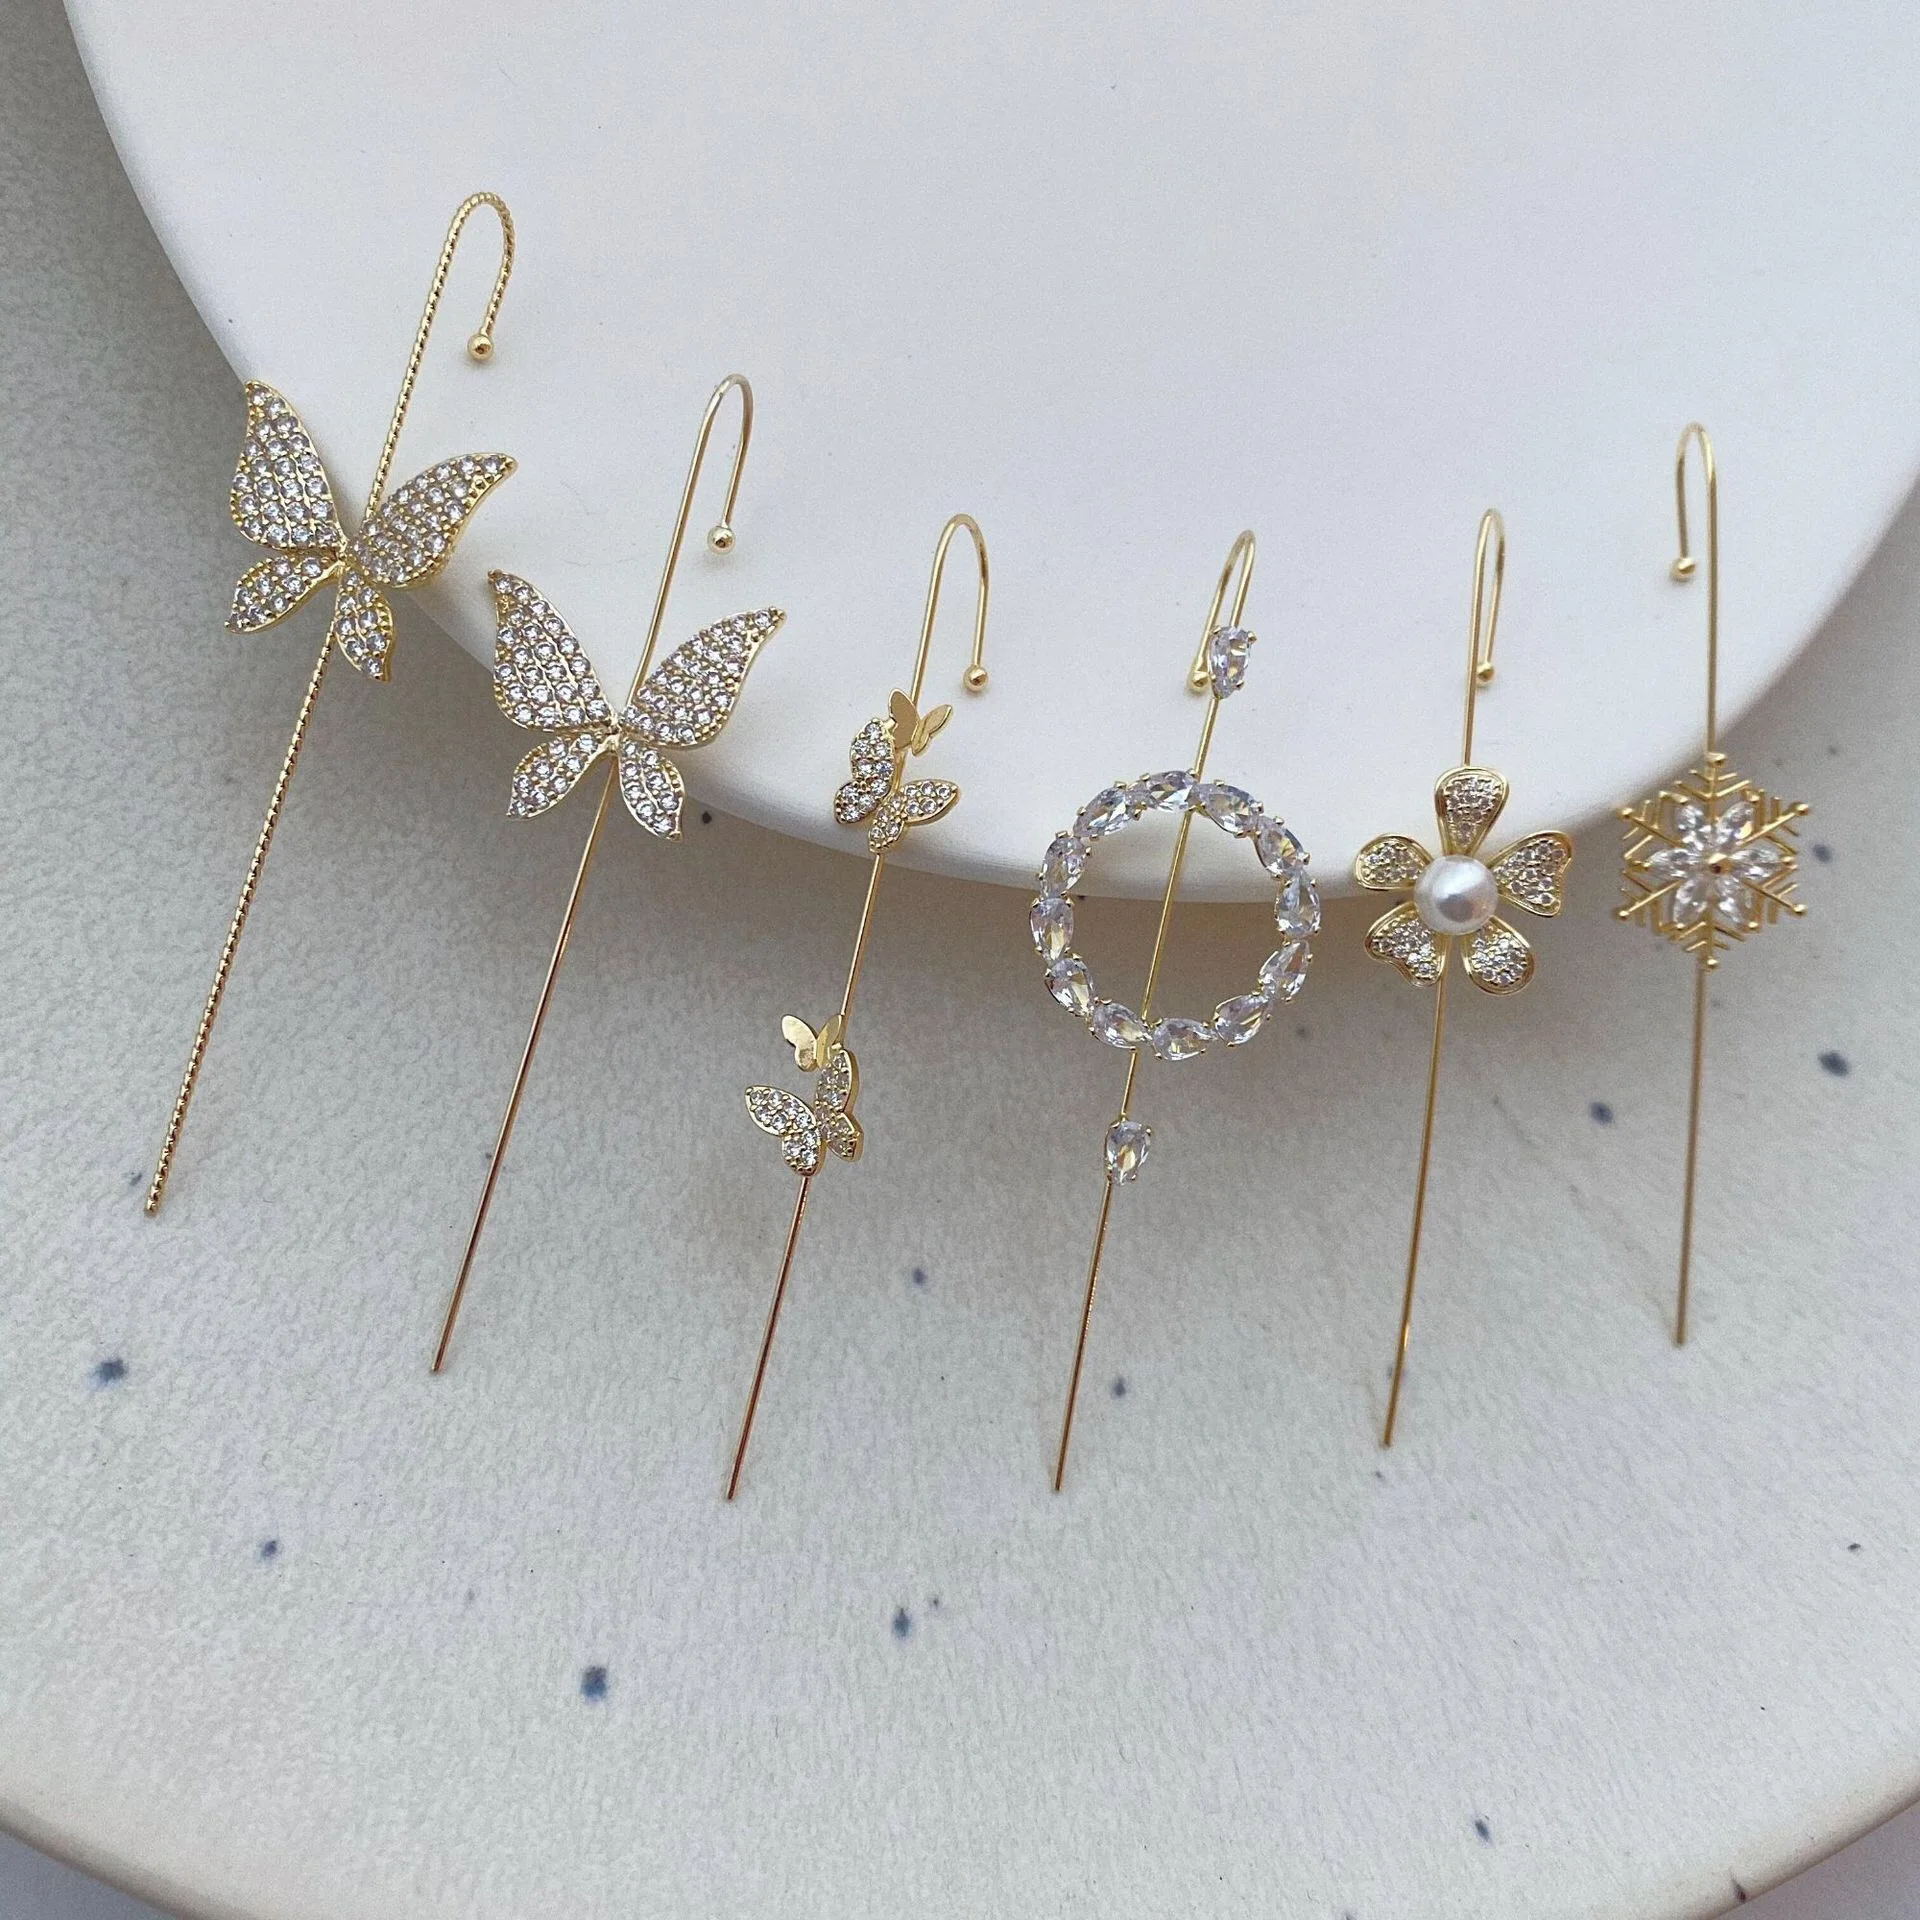 

Bohemian Pearl Stud Piercing Earrings 14k Gold Filled Stainless Steel Zircon Crystal Butterfly Ear Wrap Crawler Hook Earrings